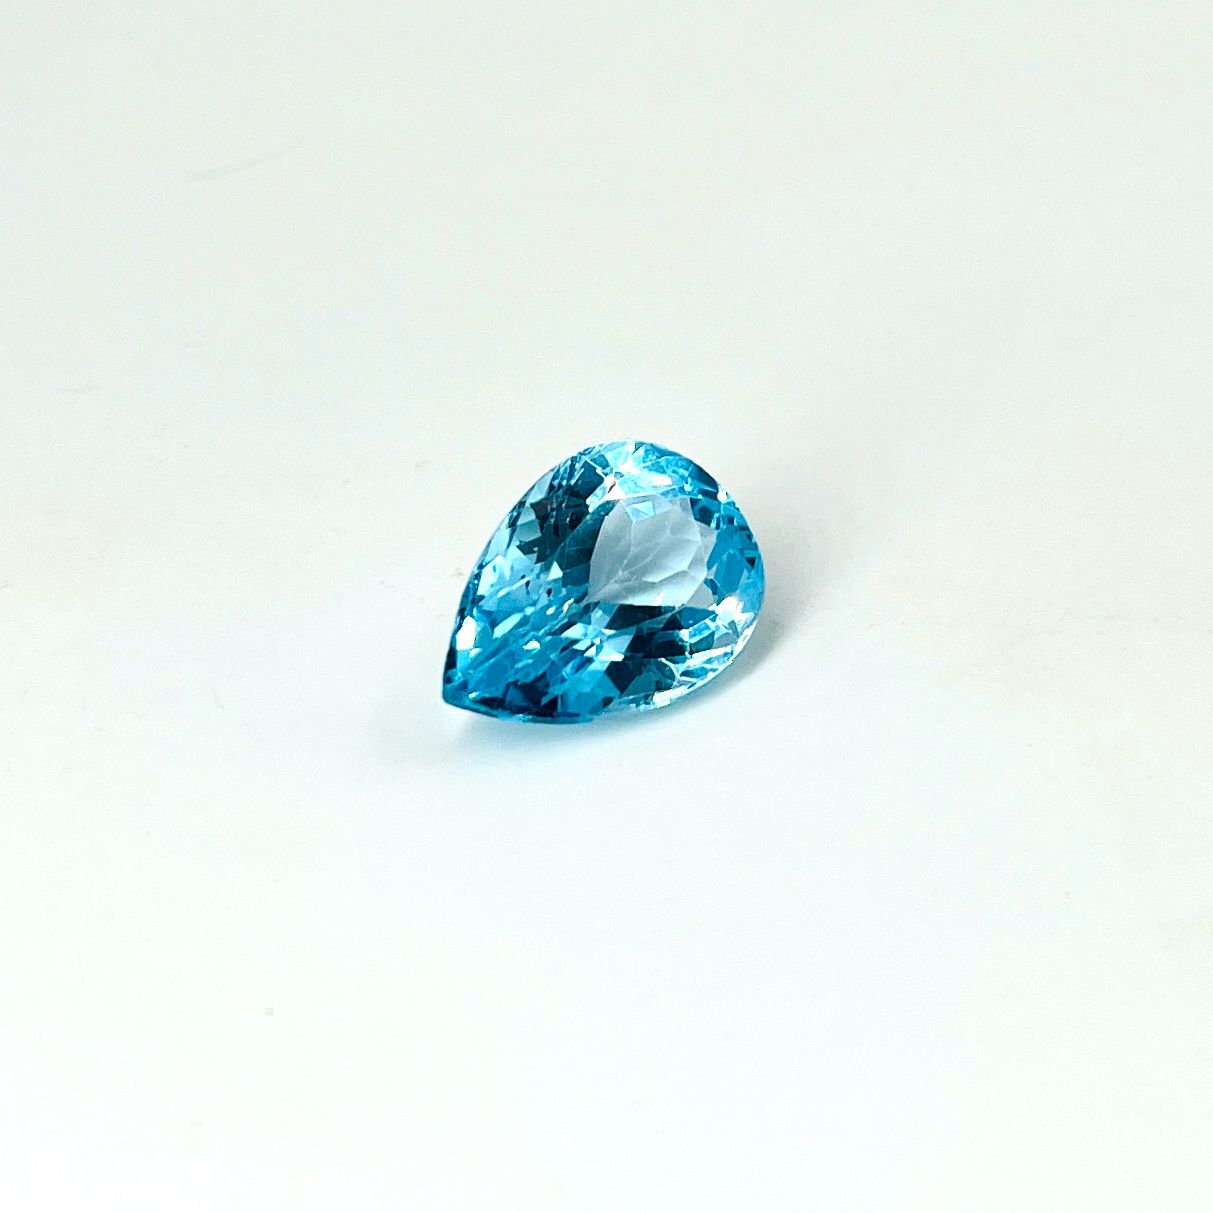 Null 梨形切割的蓝色托帕石，重达23.38克拉。尺寸：2.2 x 1.5厘米